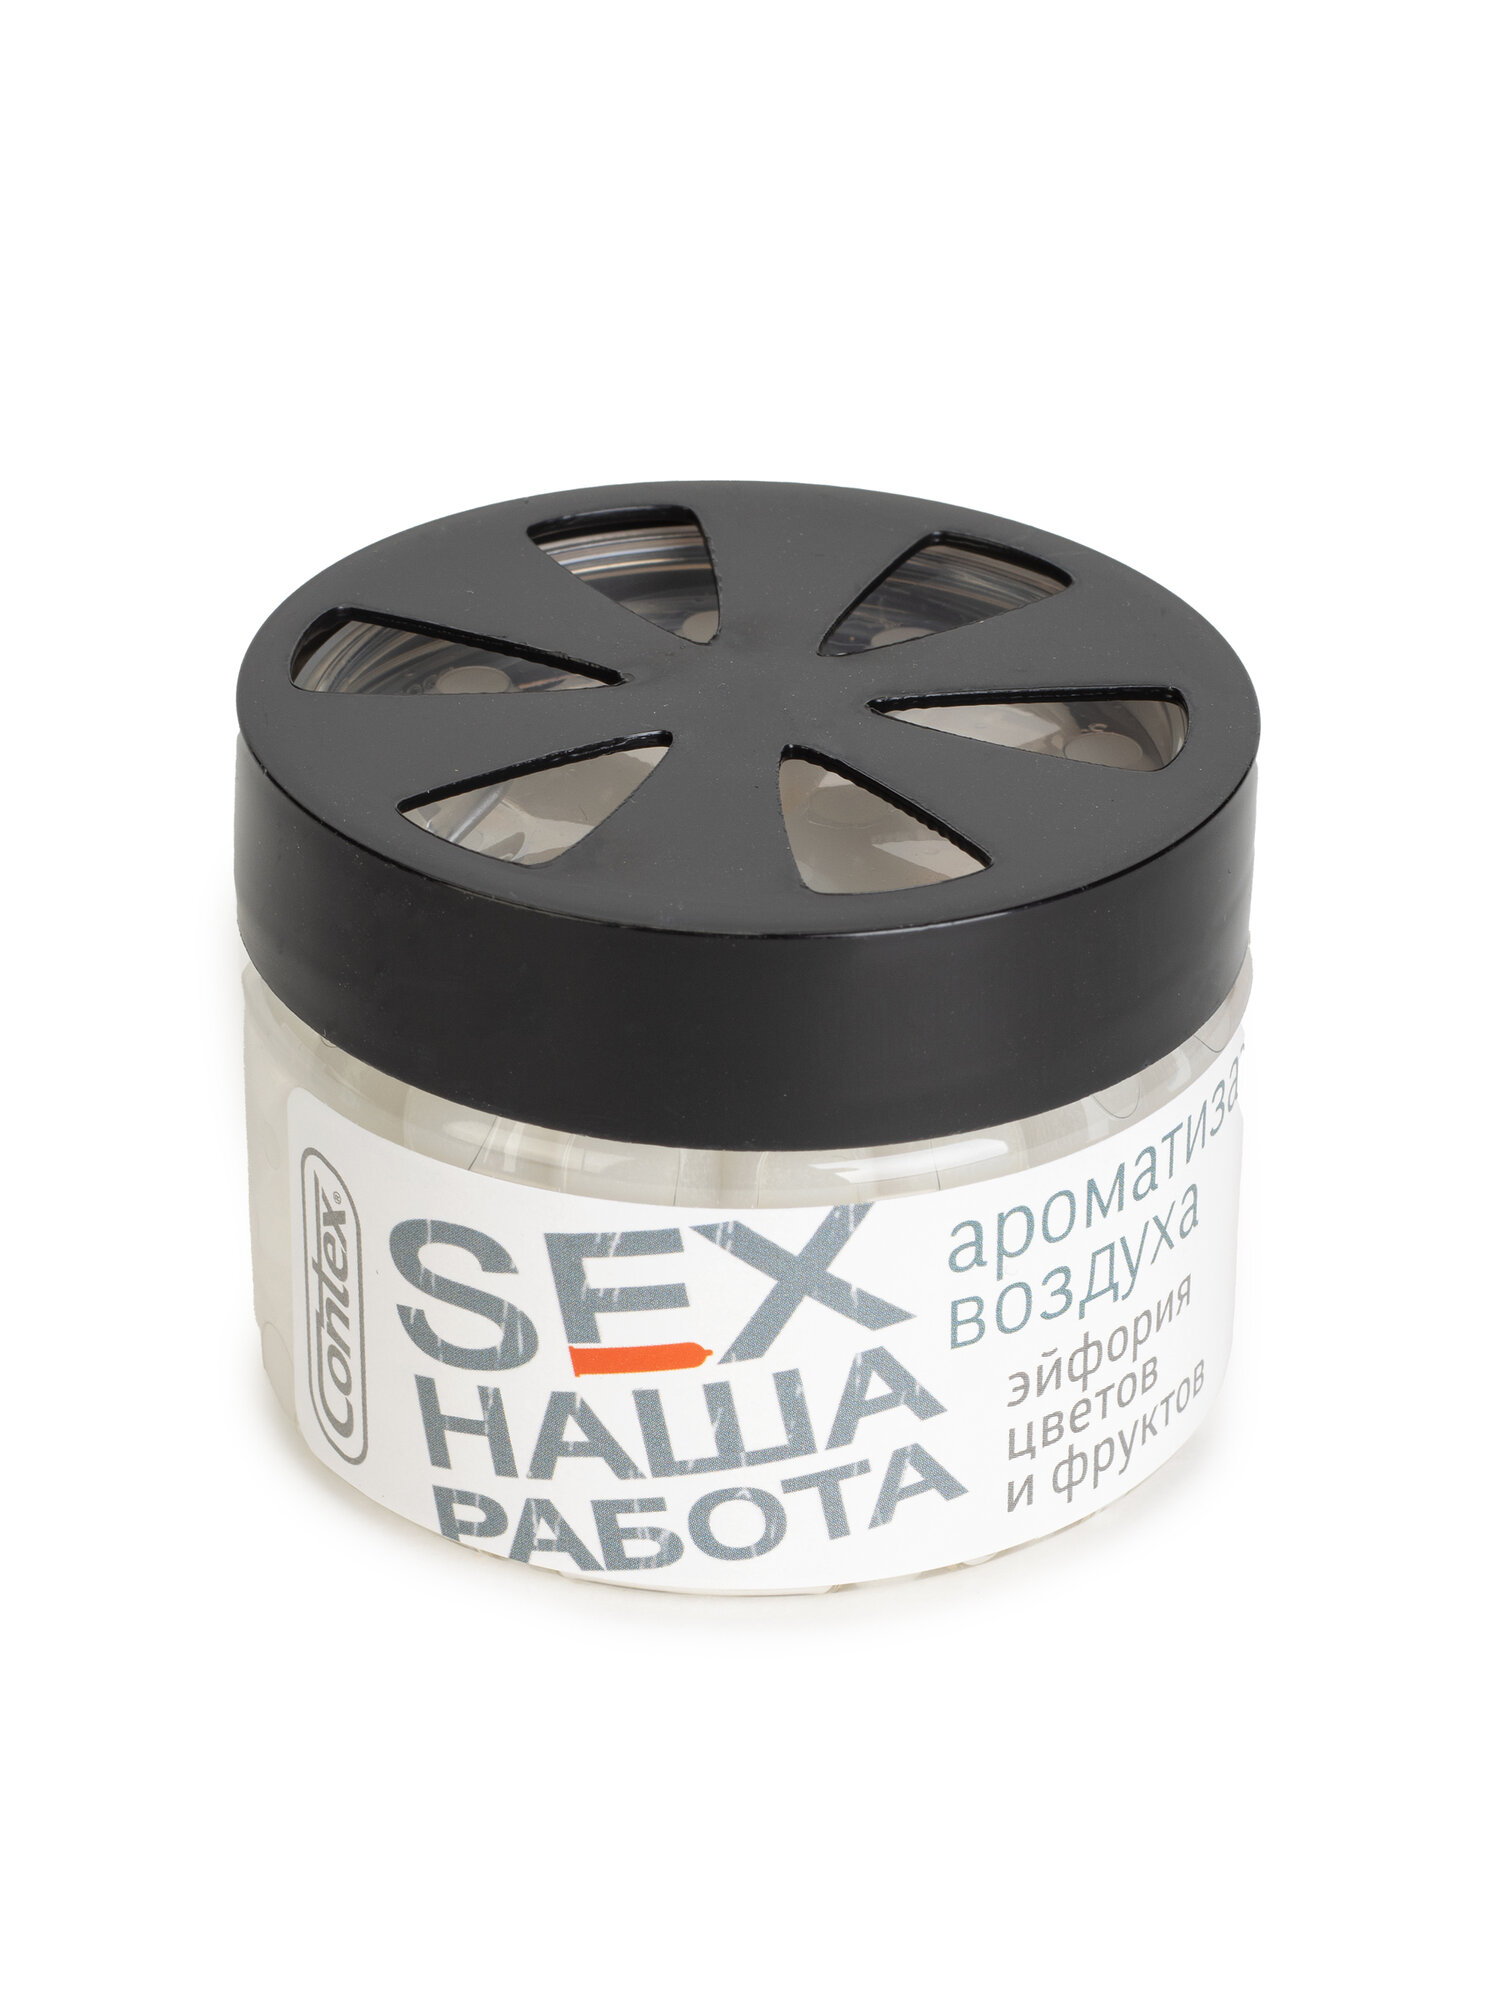 Ароматизатор на панель Contex Sex наша работа аромат цветочных и фруктовых запахов CONTEX-AROMA УТ-00889G(RABOTA) | цена за 1 шт